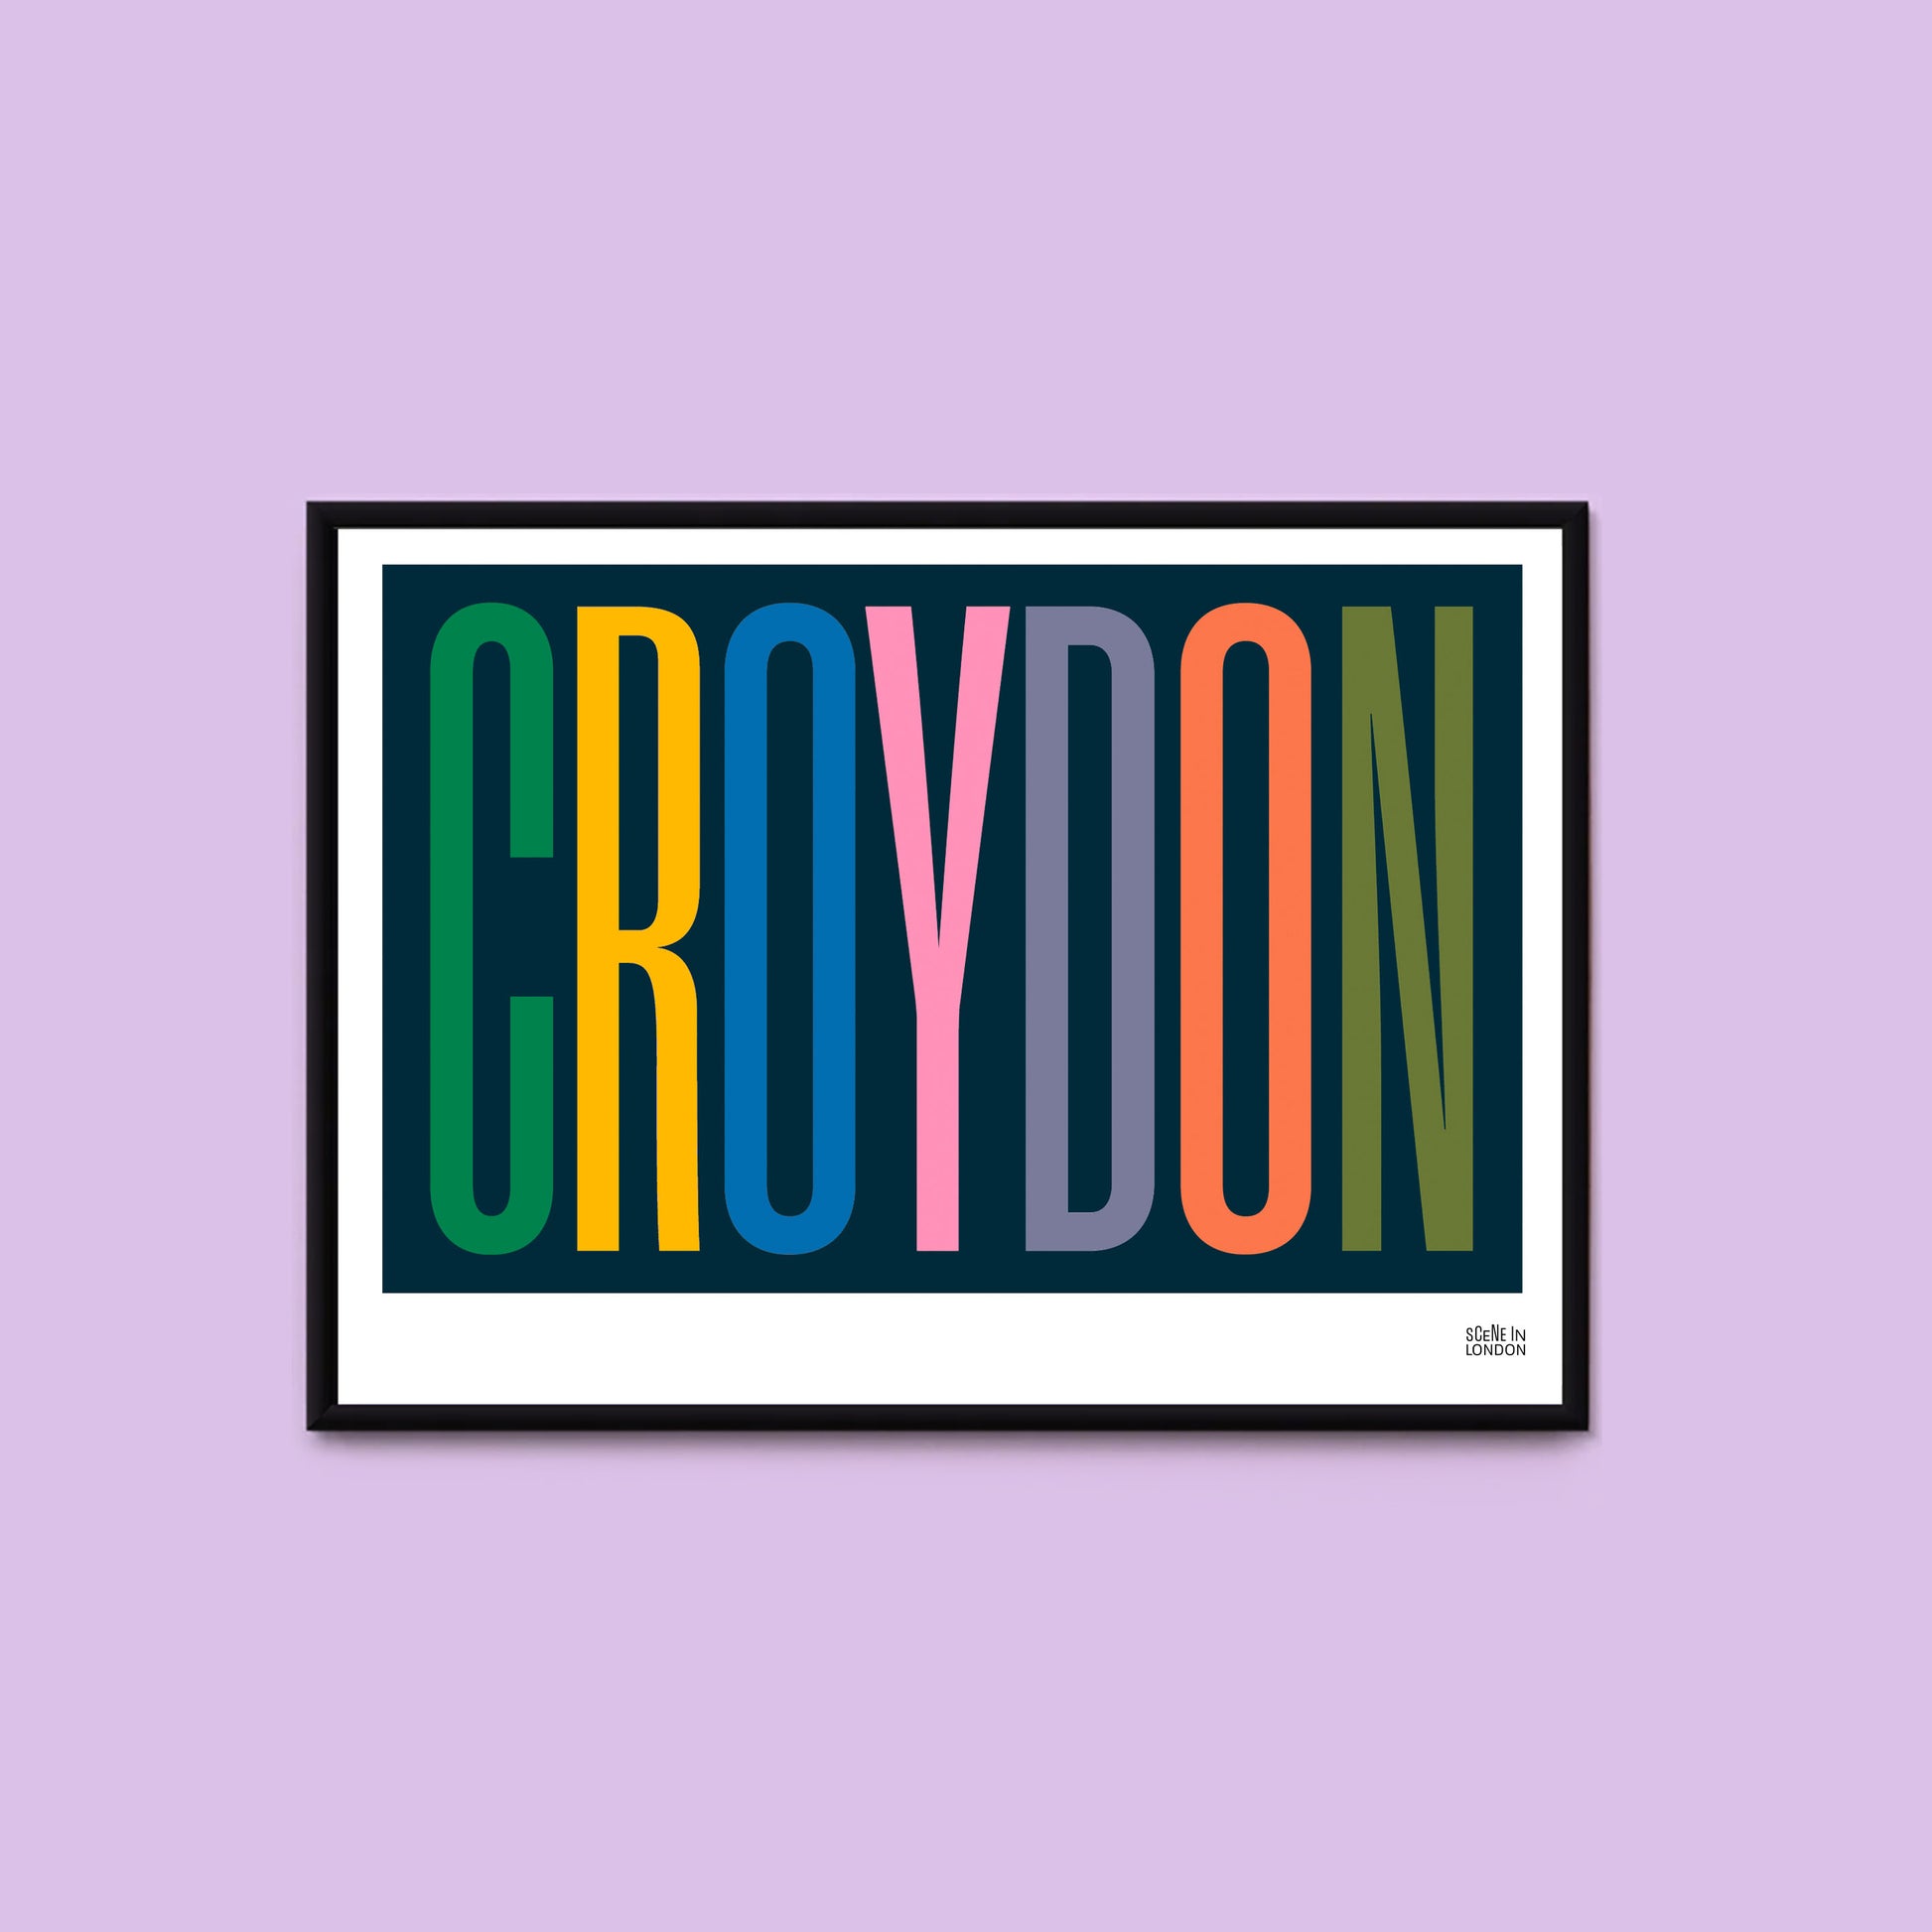 Croydon typographic print